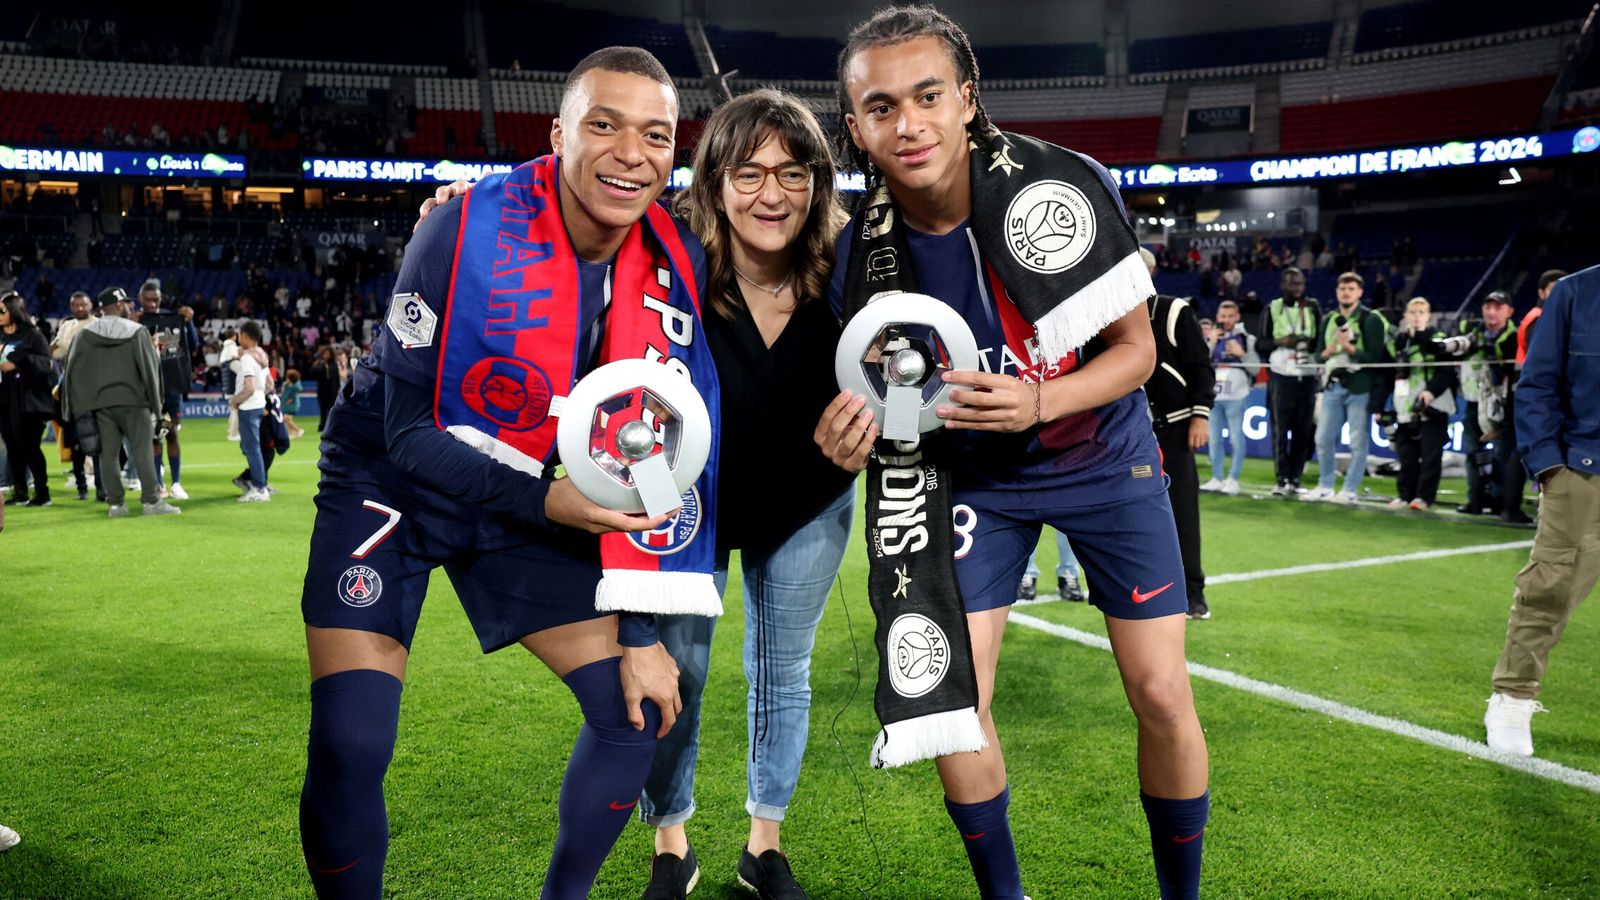 El futbolista posa junto a su hermano y su madre. (Reuters/Vincent West)